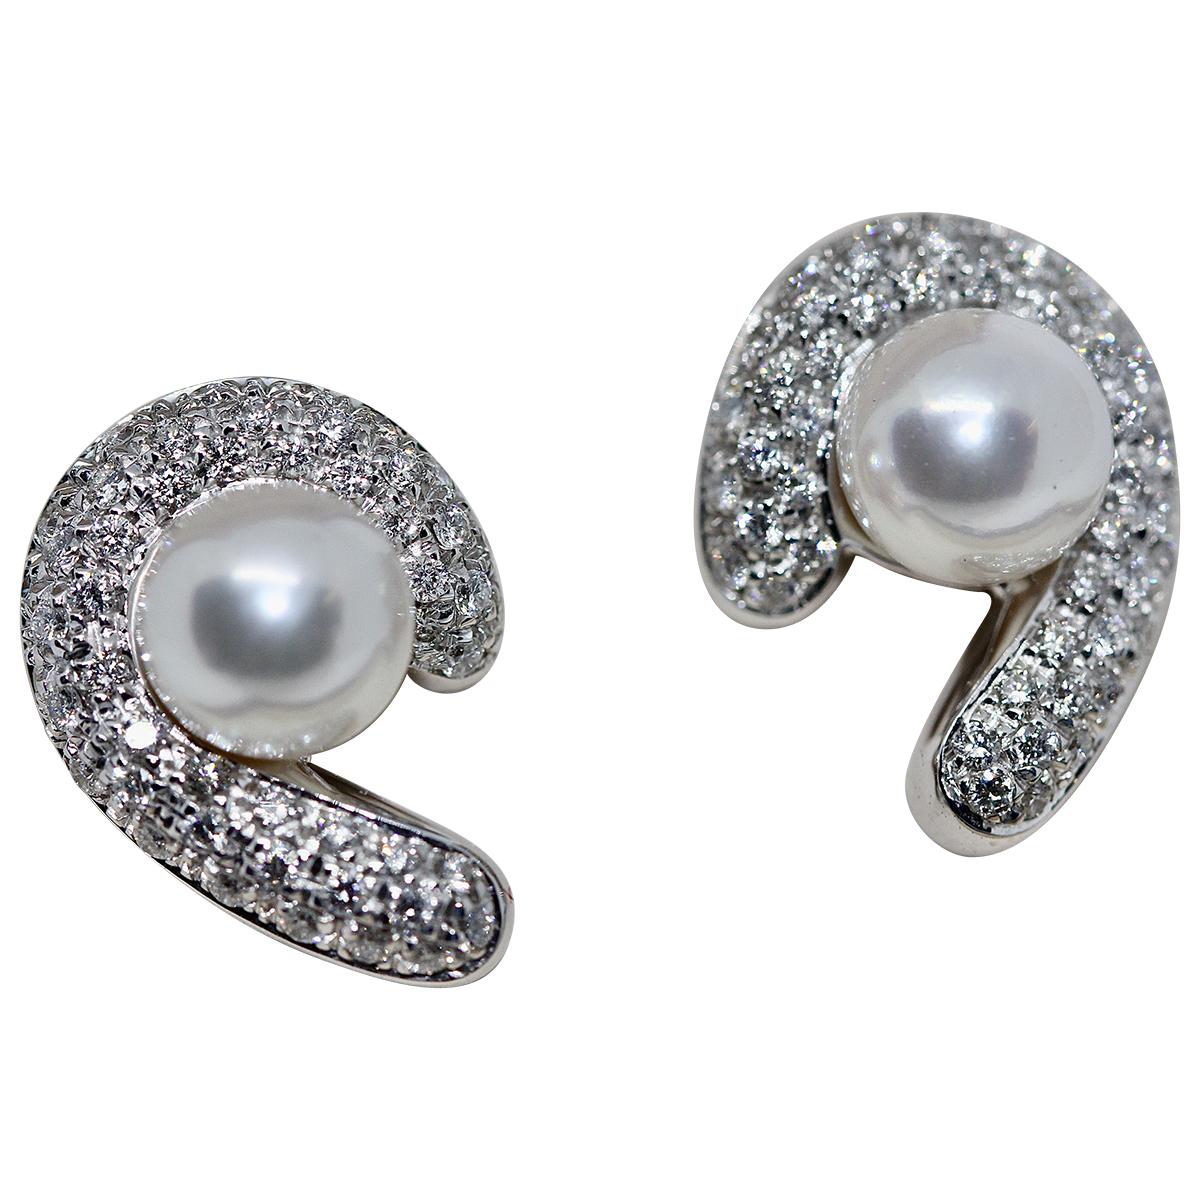 18 Karat White Gold Pearl Ear Clips, Earrings with Diamonds, by Carl. Bucherer